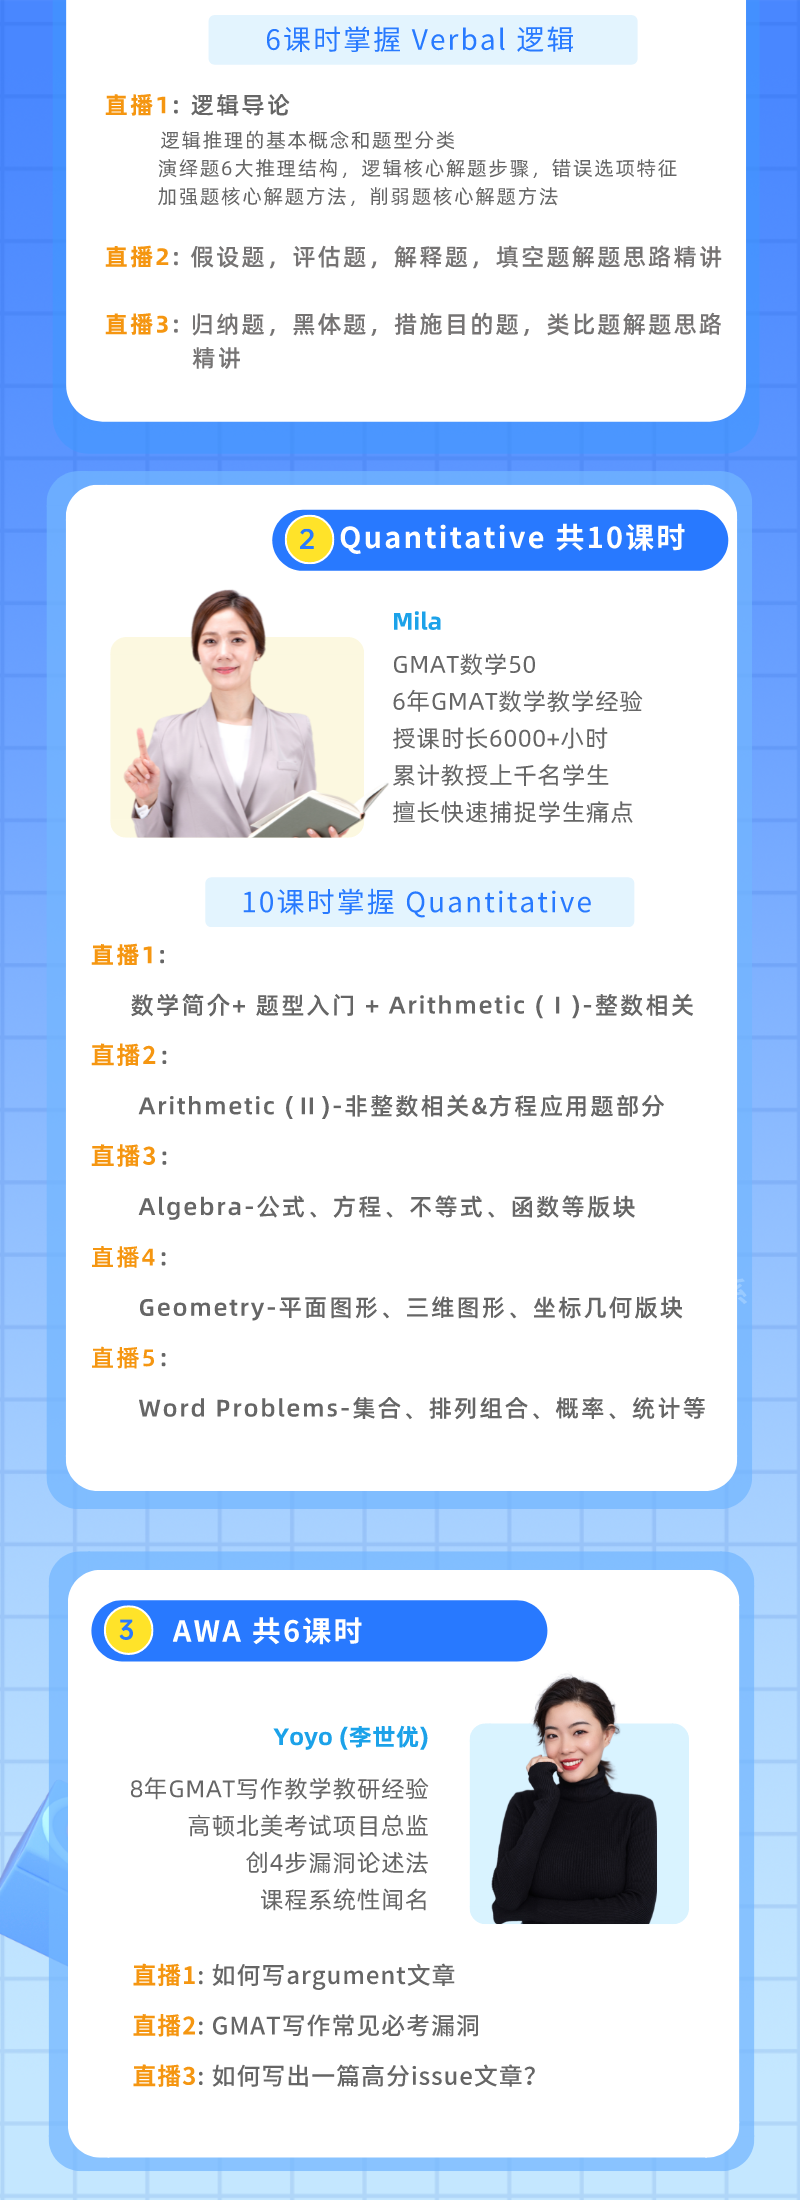 https://simg01.gaodunwangxiao.com/uploadfiles/product-center/202212/15/16b8c_20221215145430.png